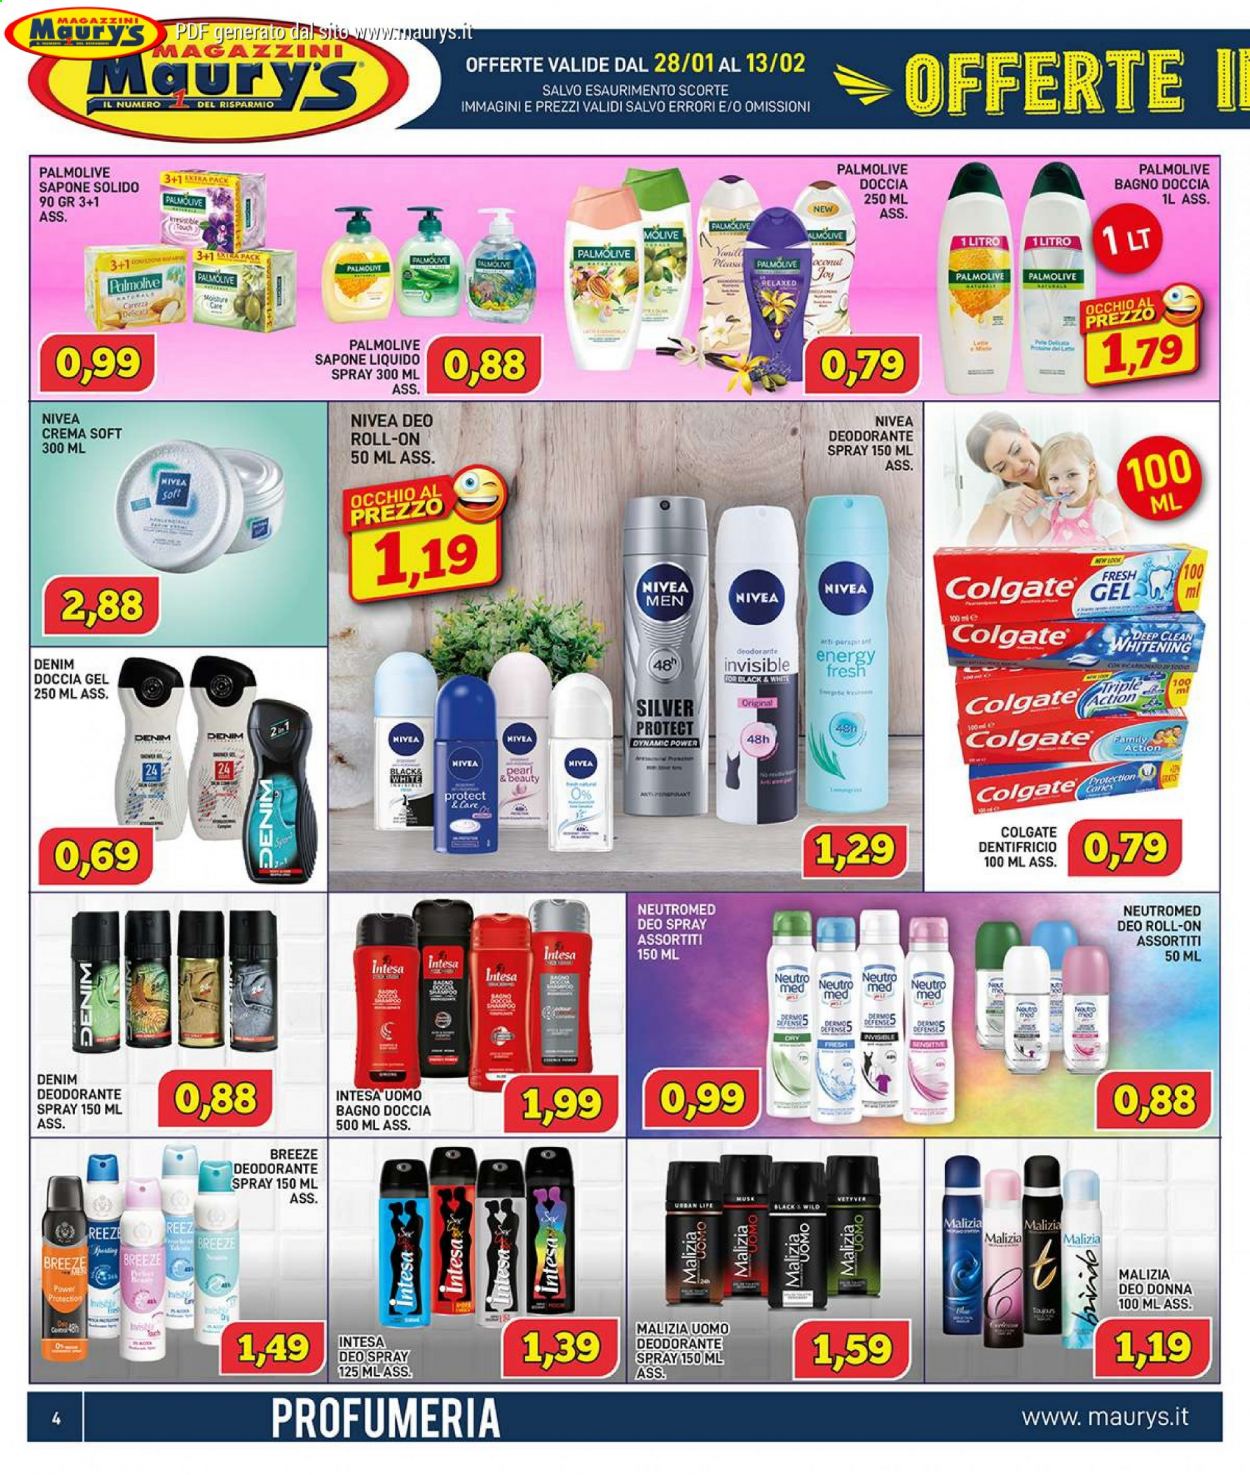 thumbnail - Volantino Maury's - 28/1/2021 - 13/2/2021 - Prodotti in offerta - Nivea, Neutromed, Malizia, Denim, sapone, sapone liquido, saponetta, Palmolive, gel doccia, Nivea Men, Colgate, dentifricio, shampoo, Breeze, deo spray, deodorante, roll on. Pagina 4.